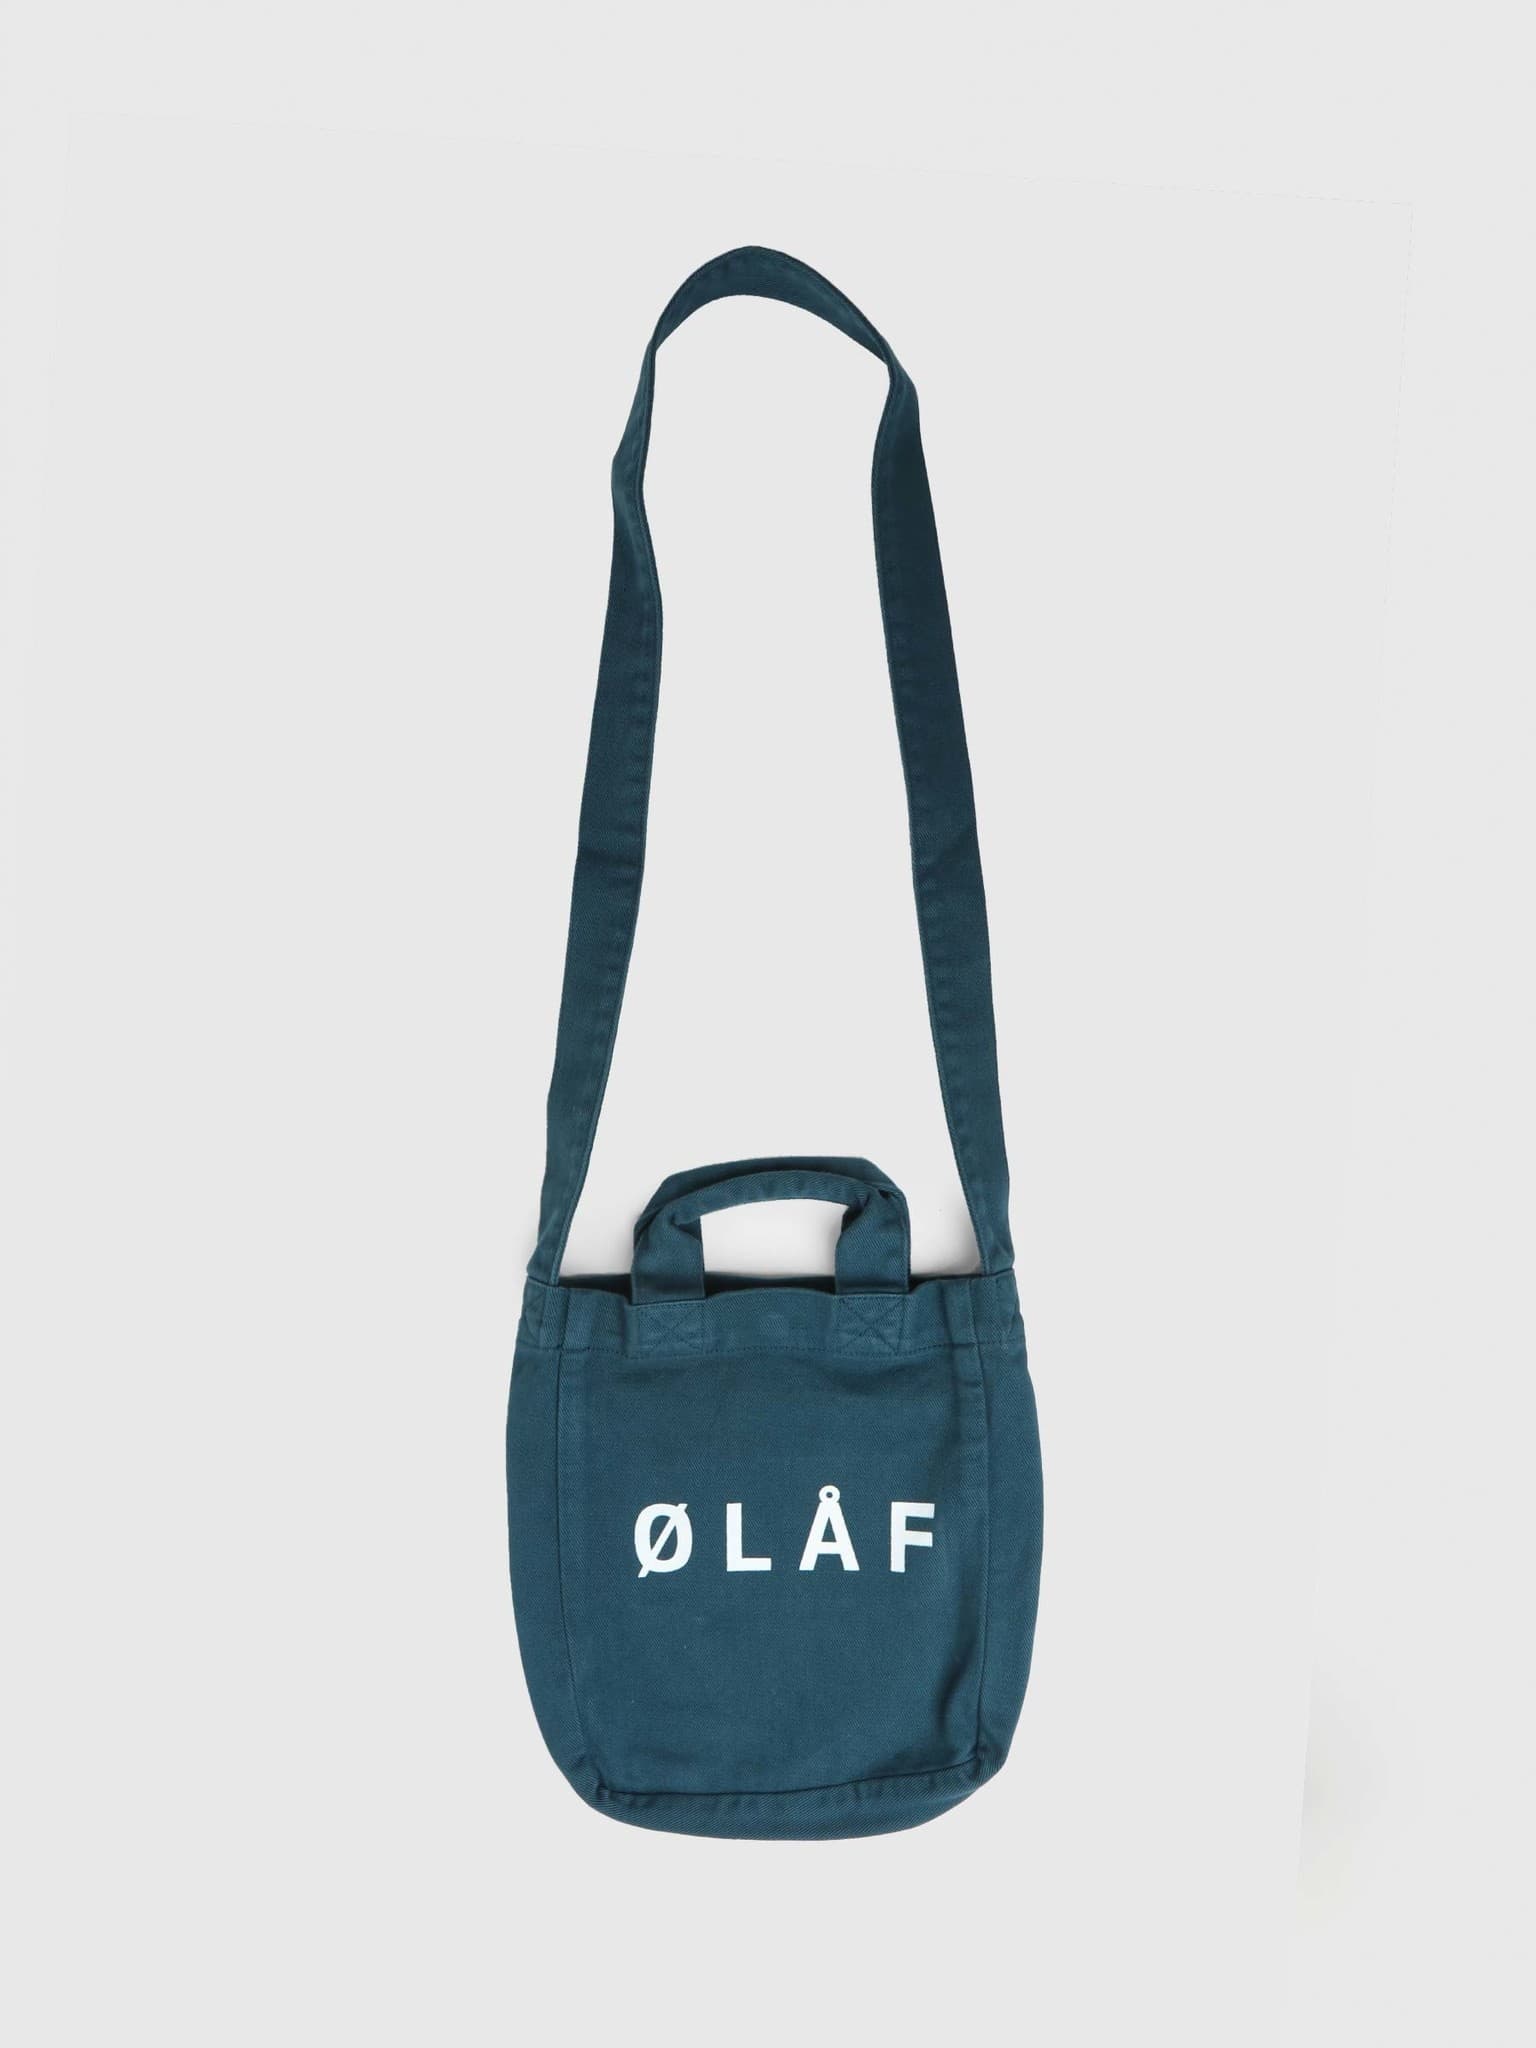 OLAF Mini Tote Bag Petrol